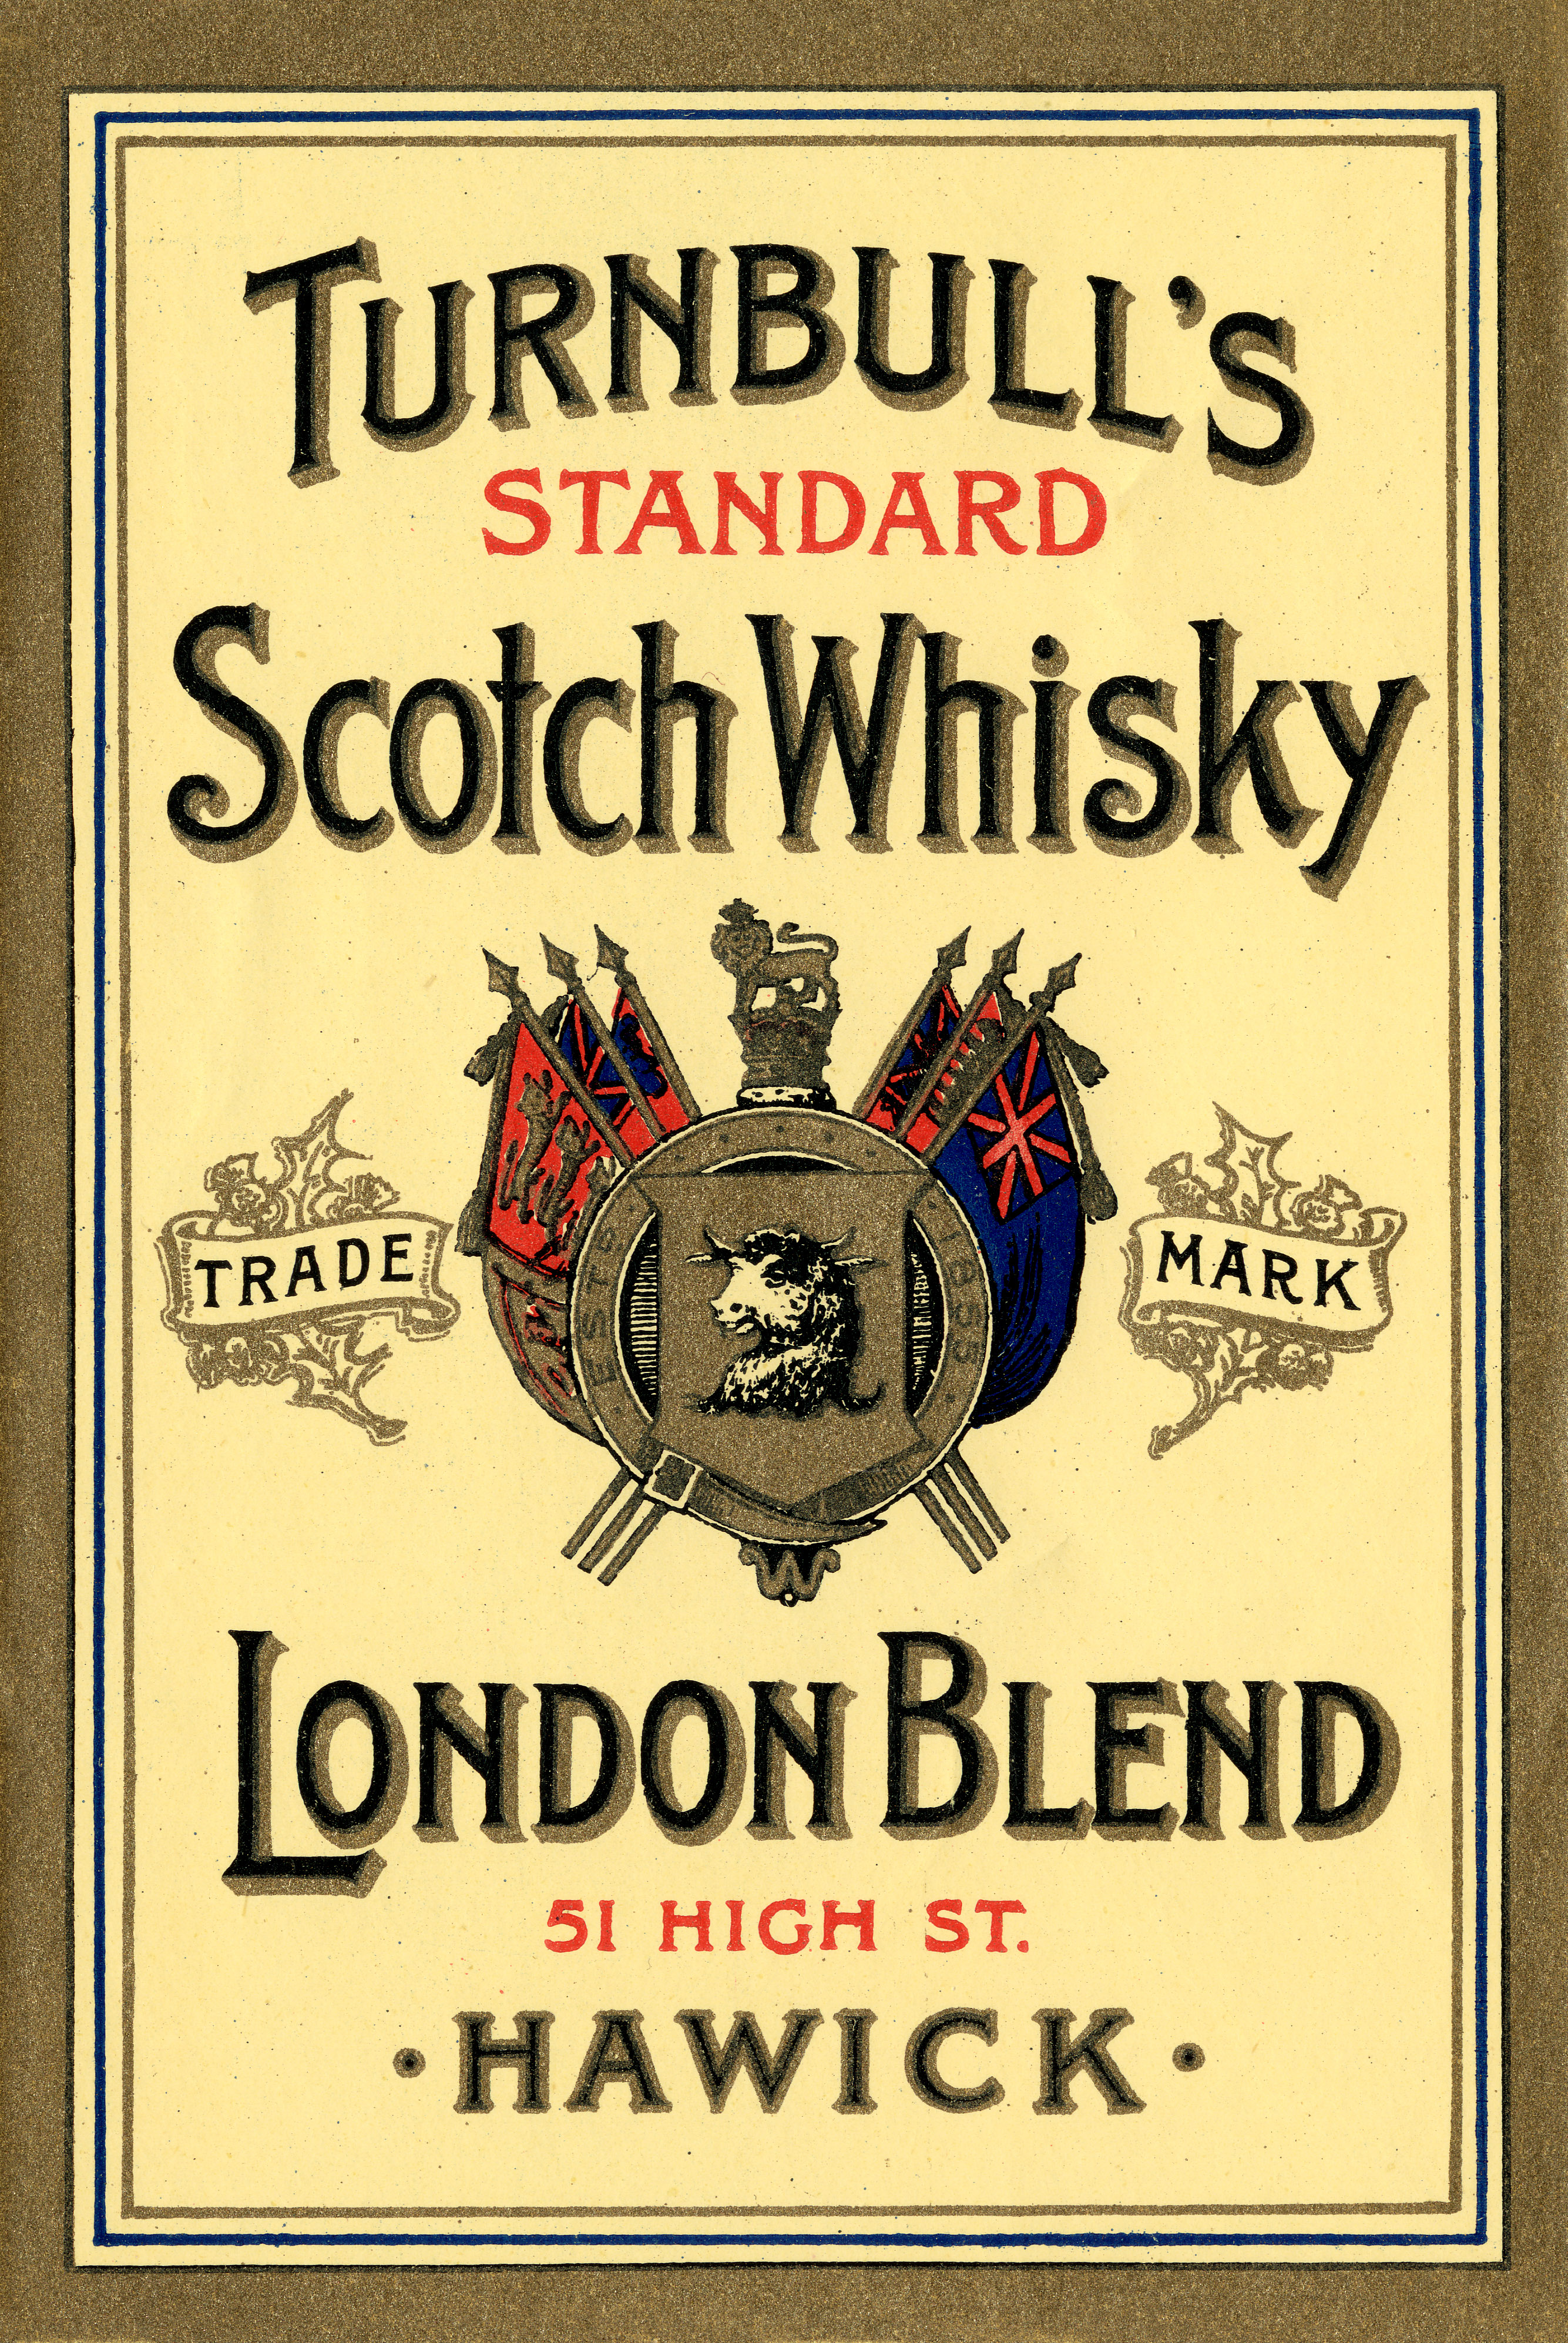 Turnbull London Blend Whisky Label